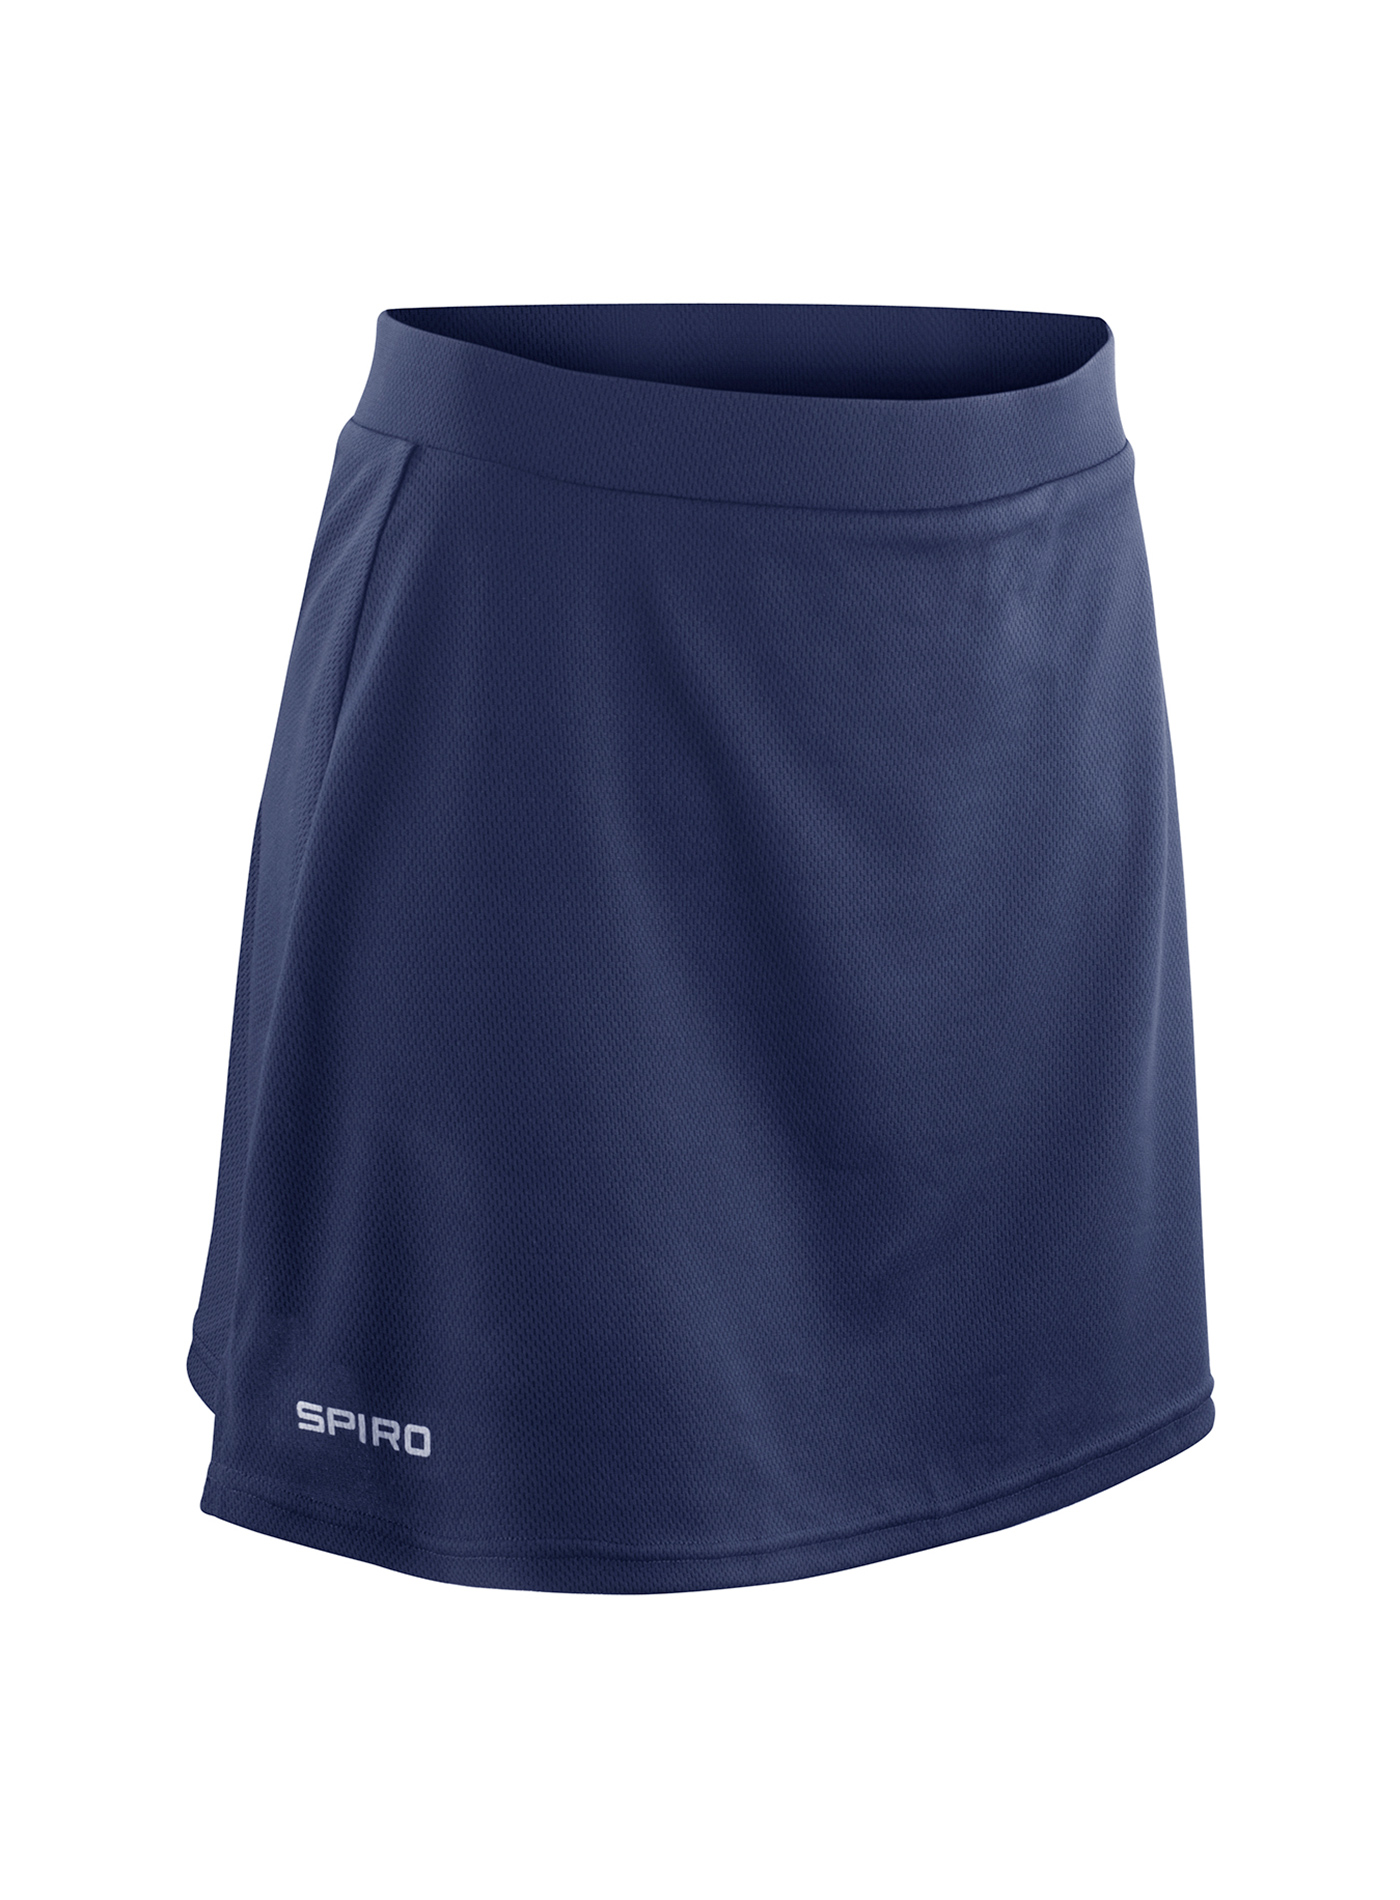 Dámská sportovní sukně s integrovanými šortkami - Cobalt blue/Navy XL